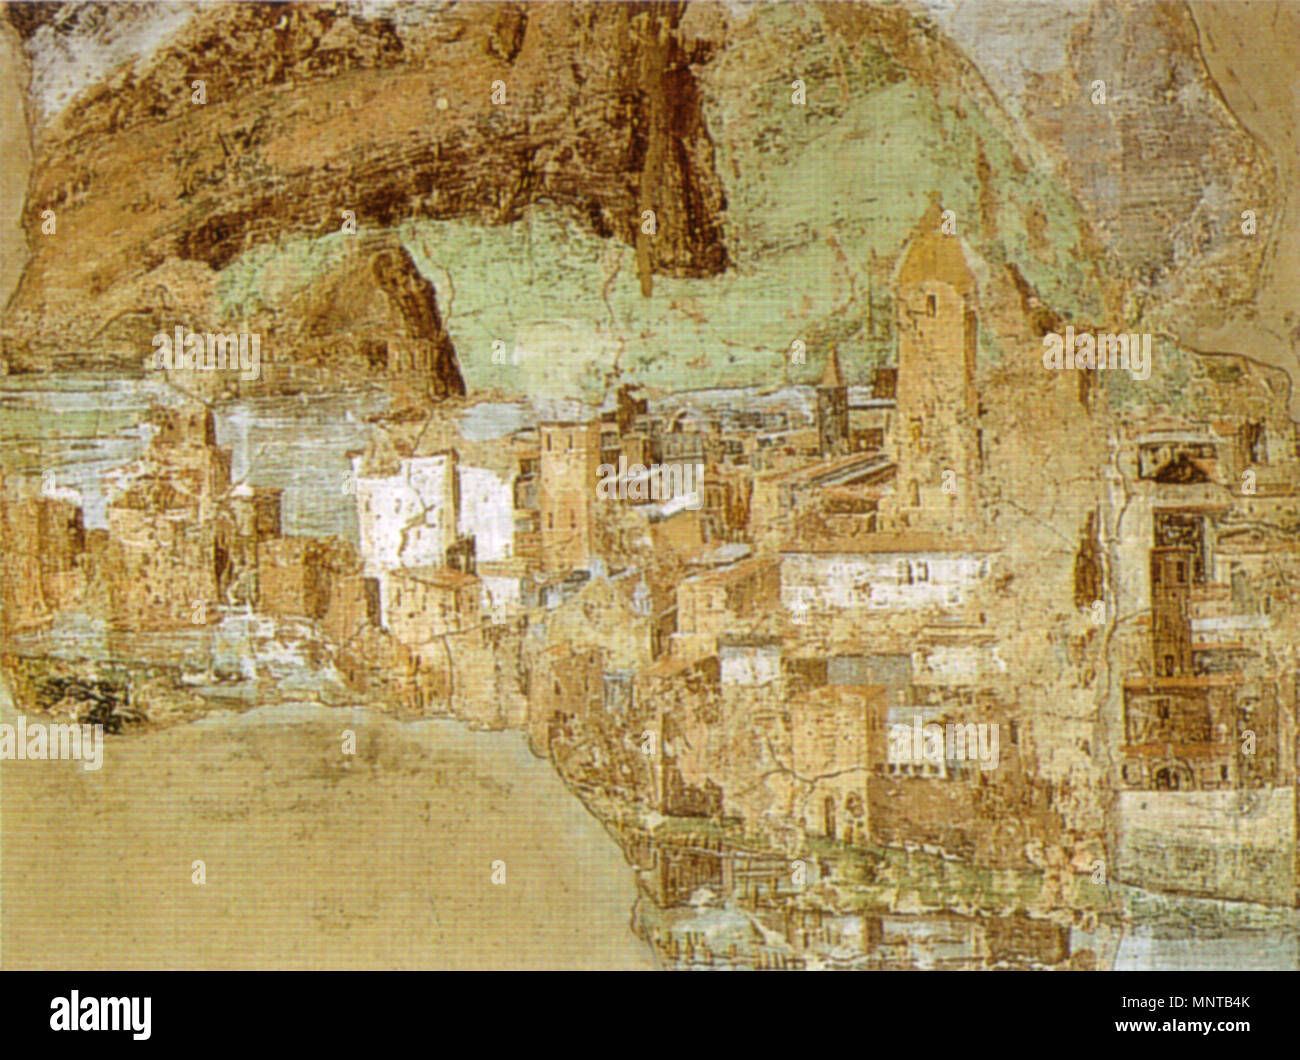 999 Pinturicchio, veduta di città, museo pio-clementino (1488-1490 circa) Stock Photo